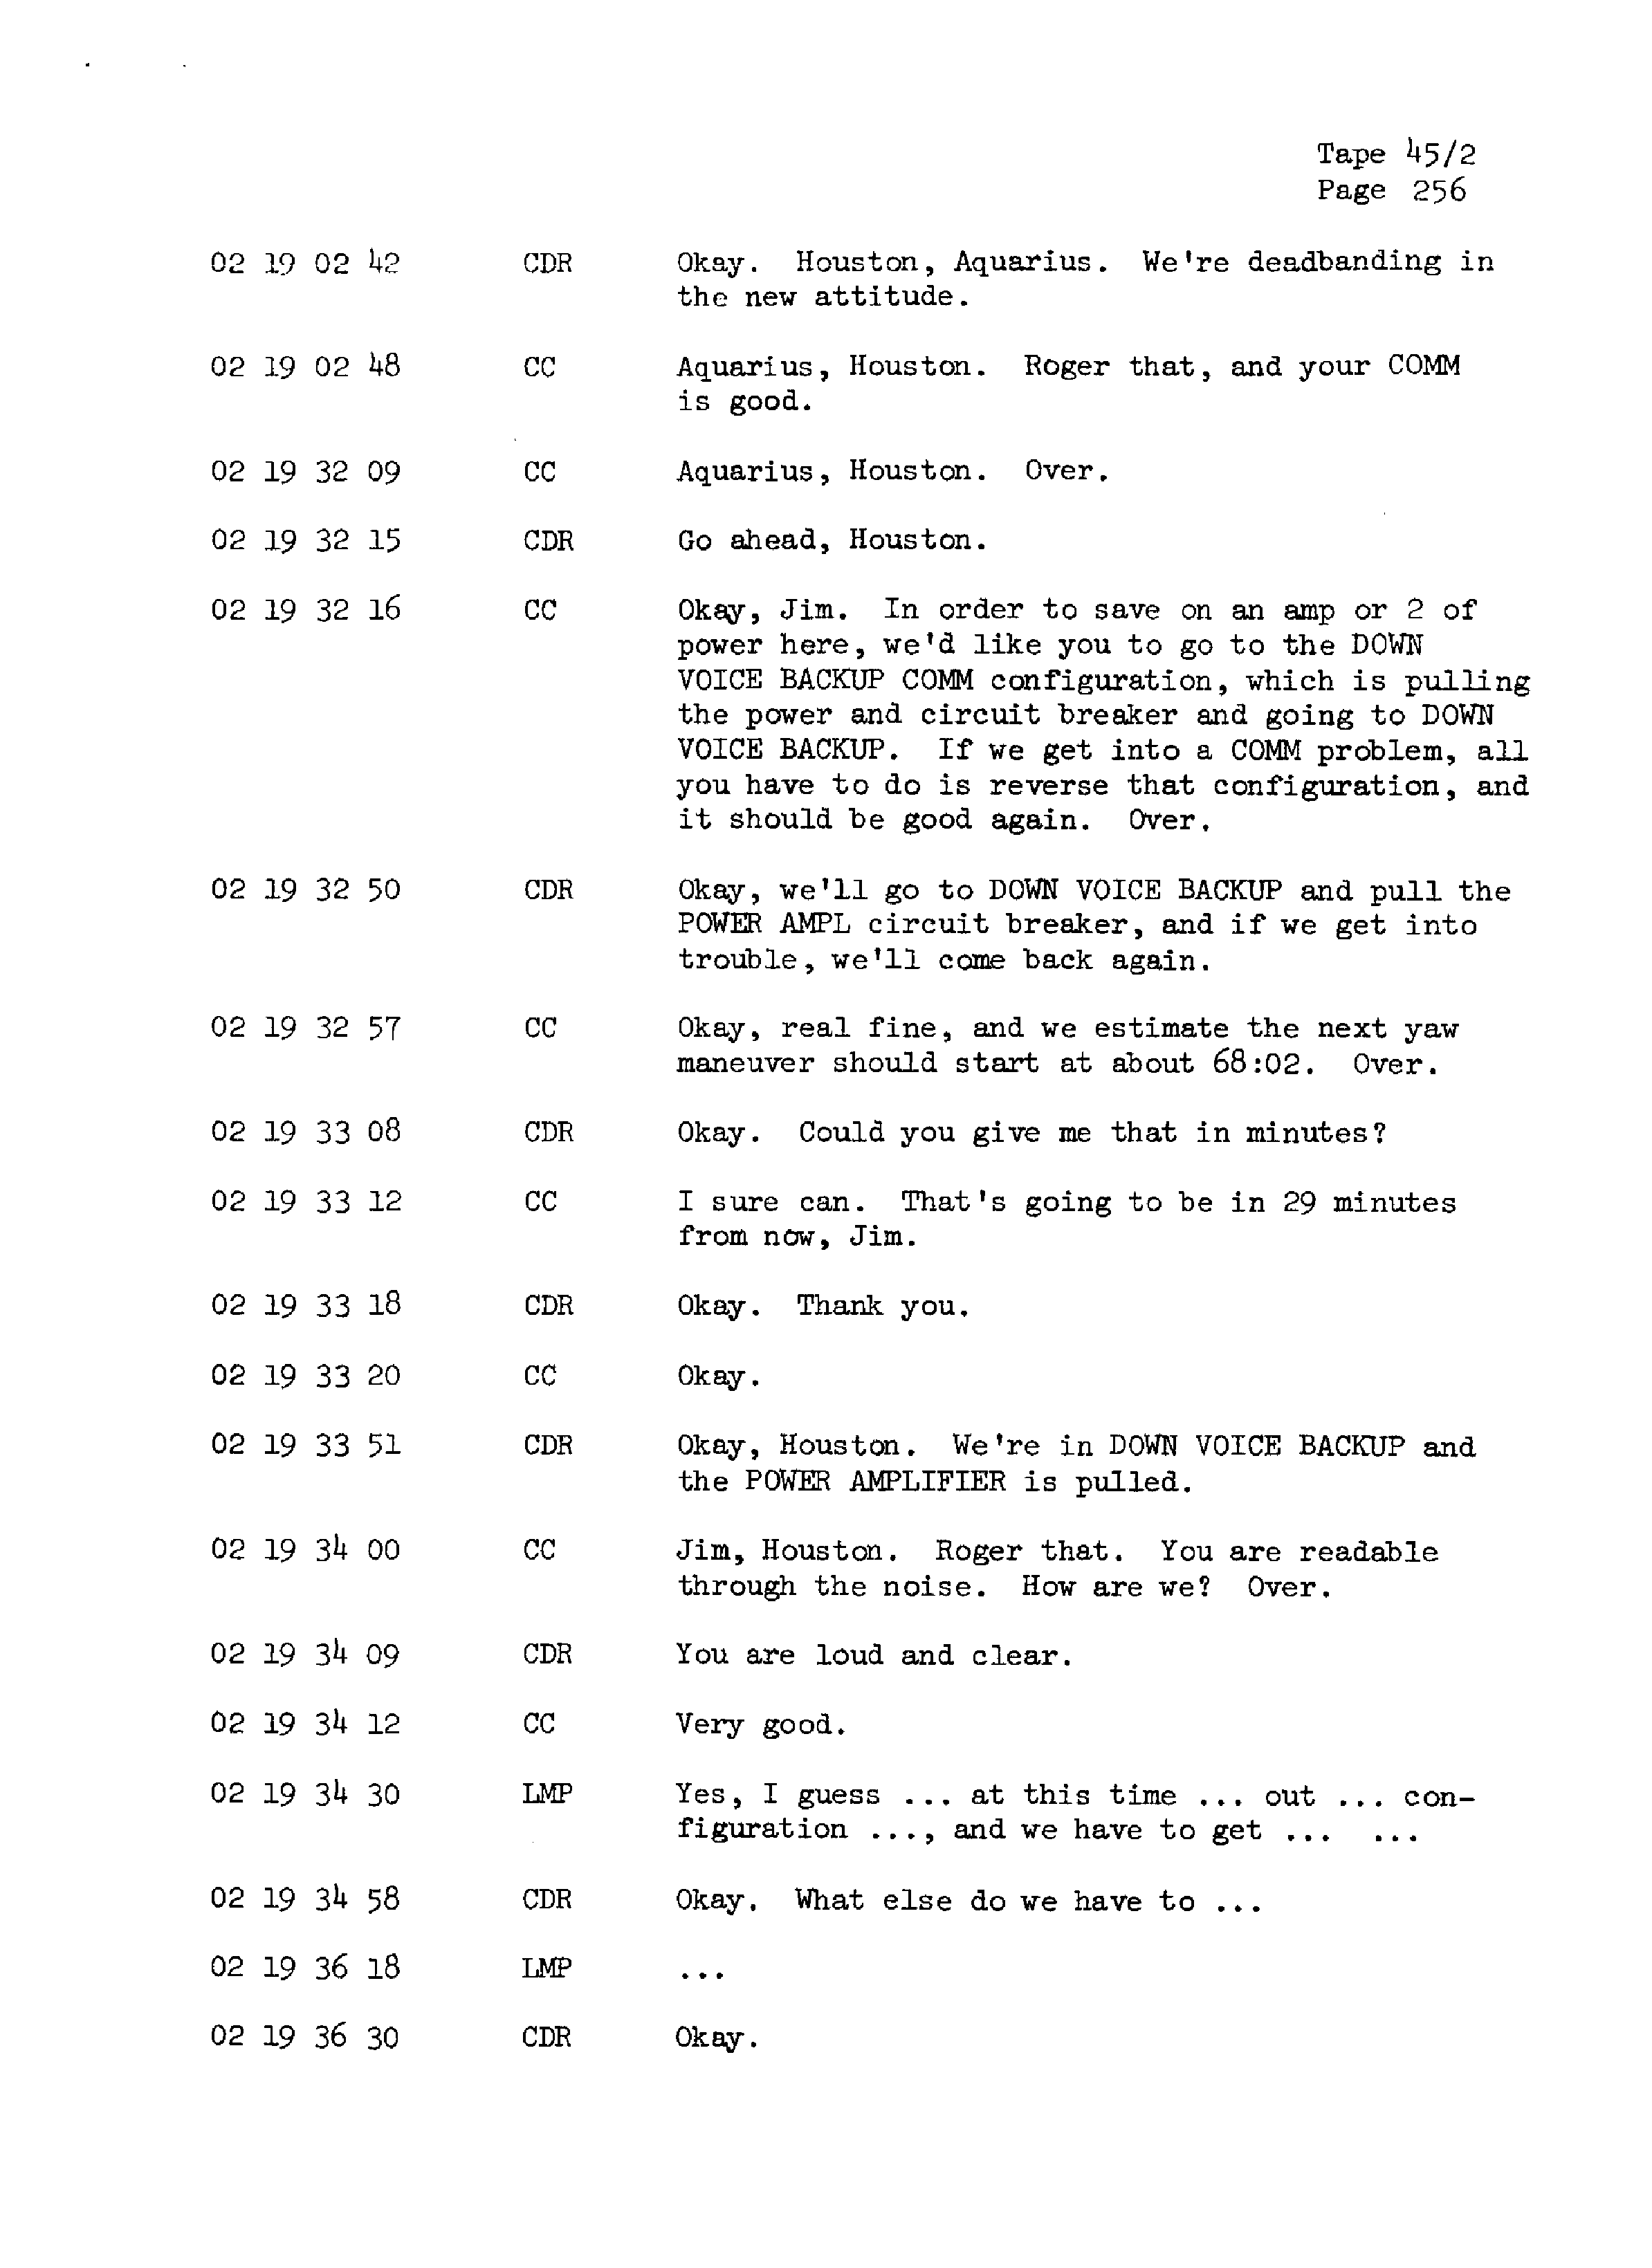 Page 263 of Apollo 13’s original transcript